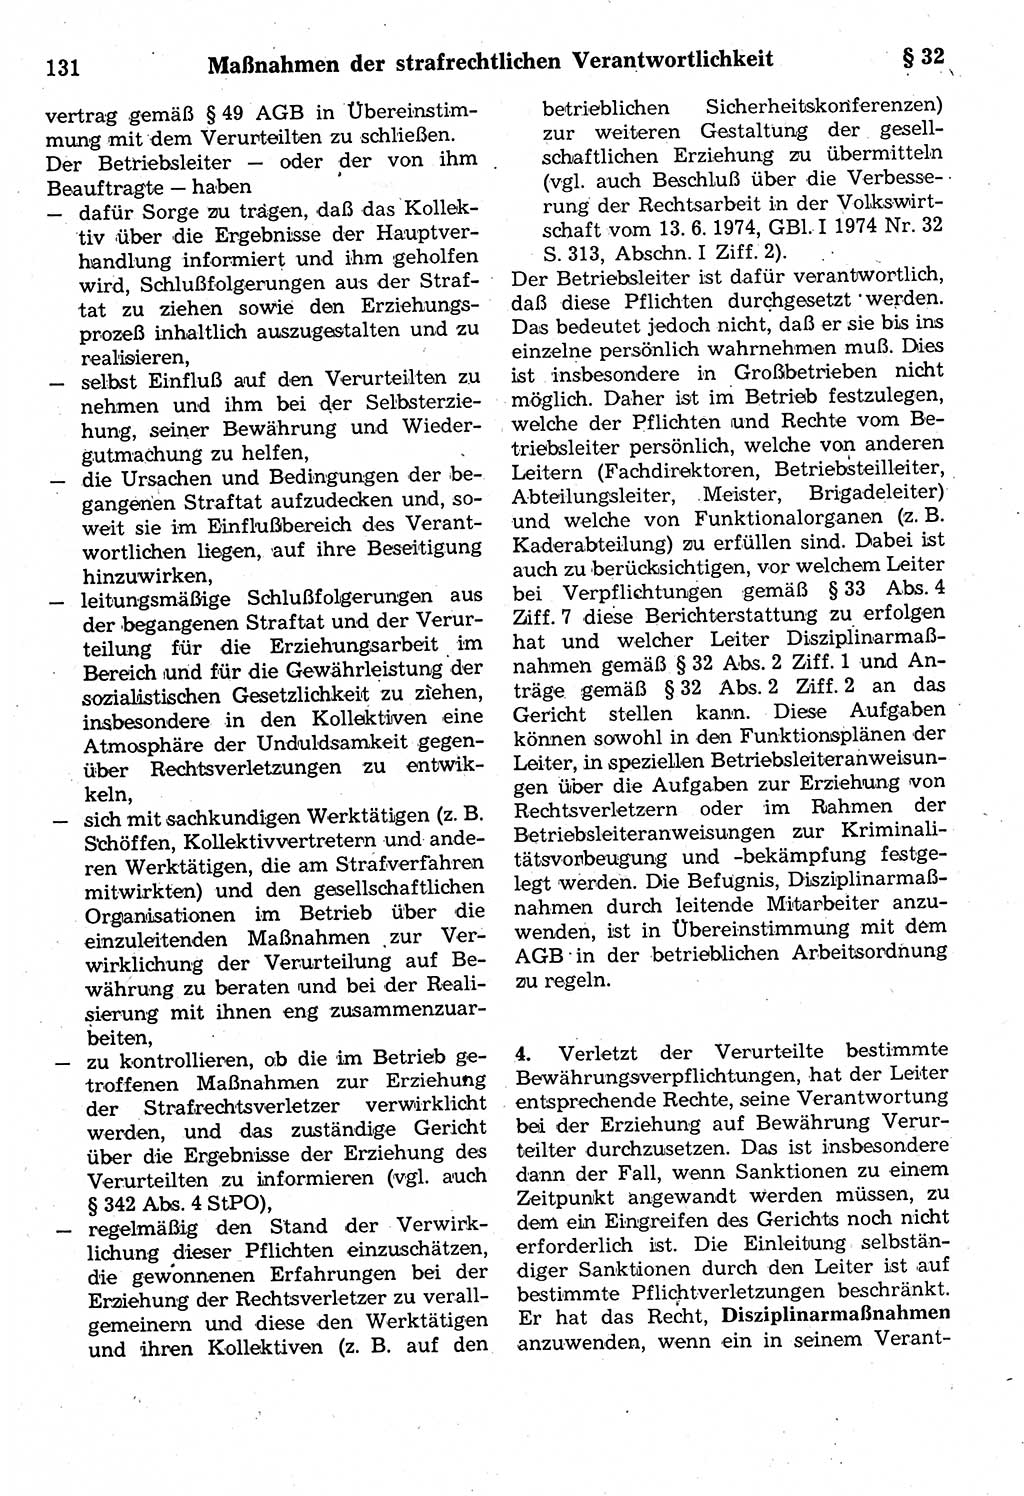 Strafrecht der Deutschen Demokratischen Republik (DDR), Kommentar zum Strafgesetzbuch (StGB) 1987, Seite 131 (Strafr. DDR Komm. StGB 1987, S. 131)